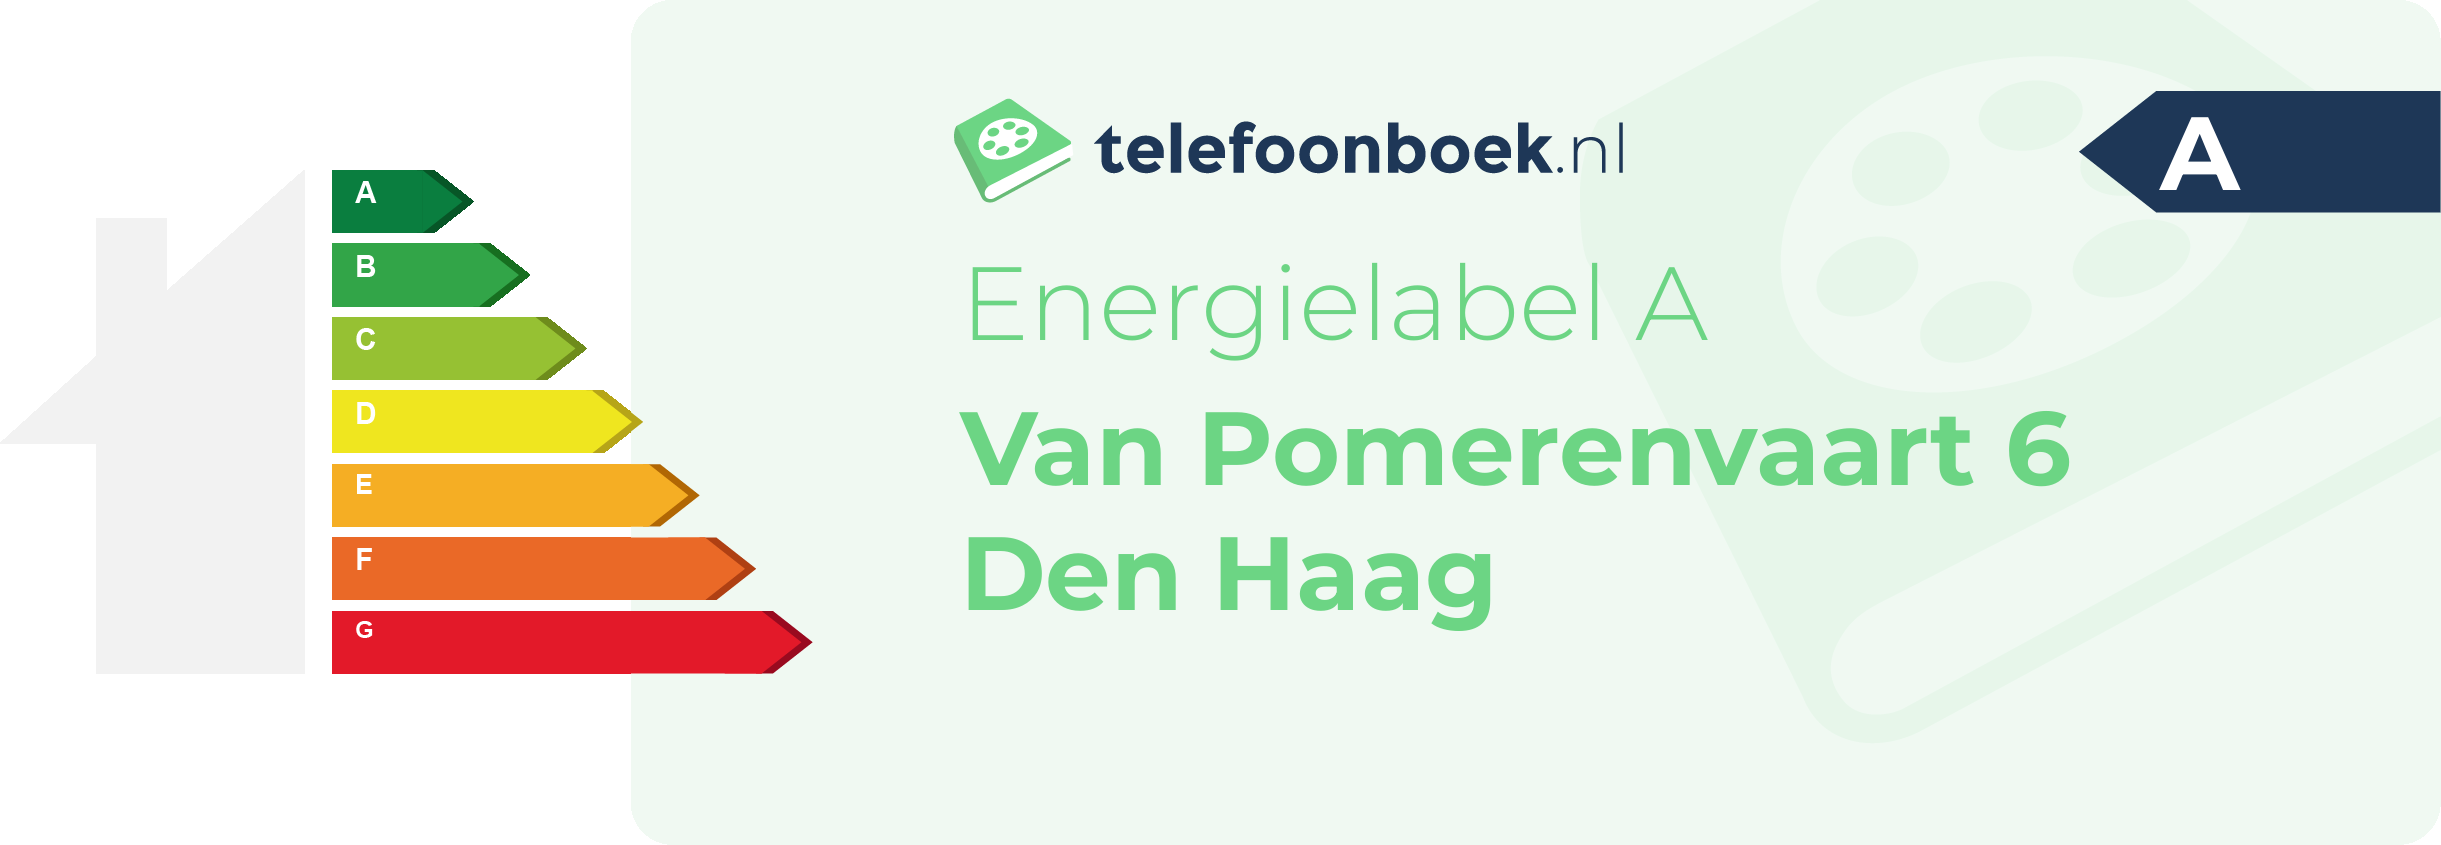 Energielabel Van Pomerenvaart 6 Den Haag